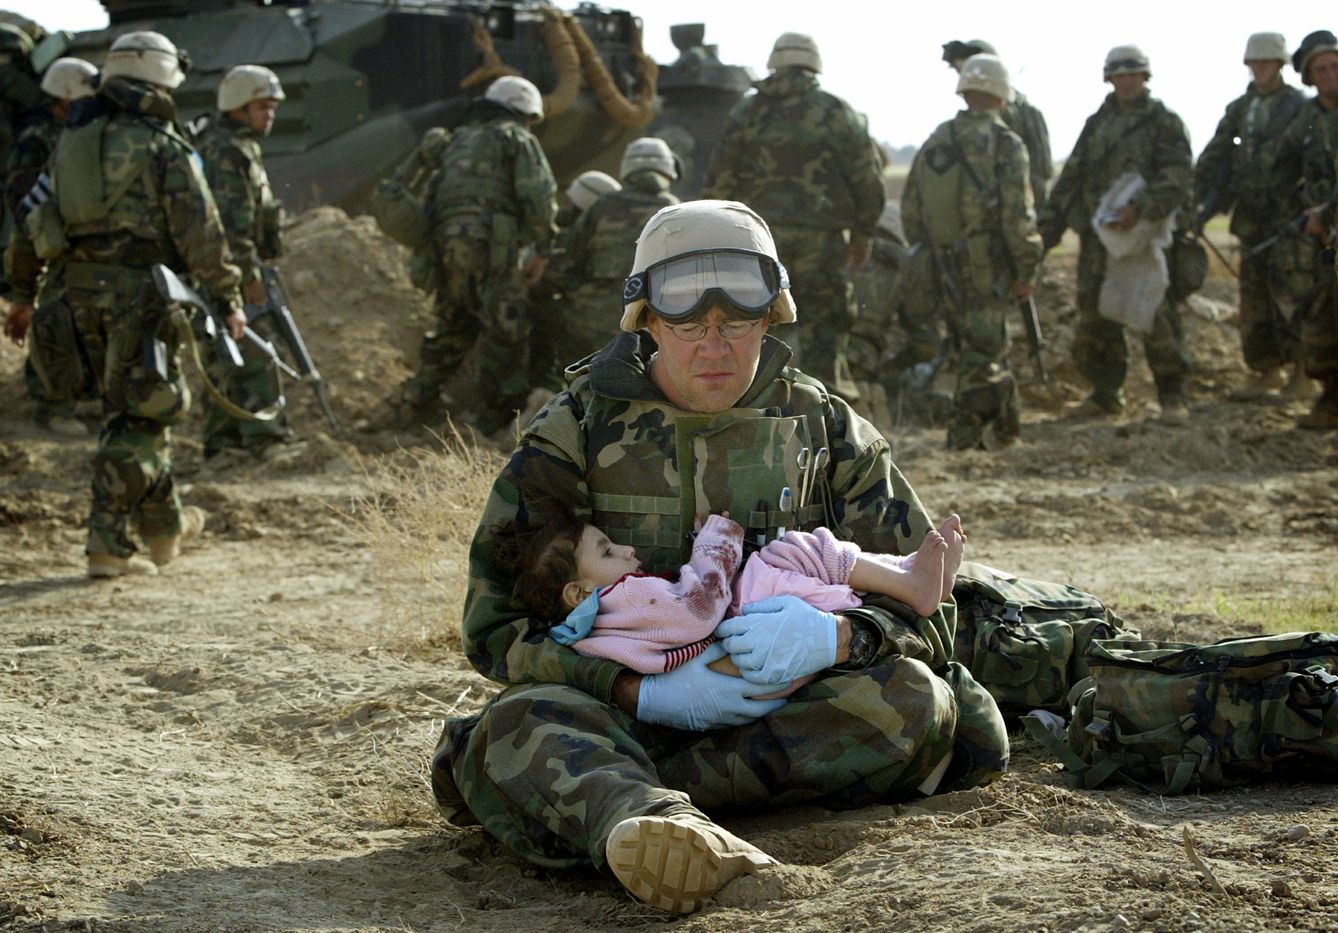 Un 'marine' estadounidense del cuerpo sanitario sostiene a un bebé iraquí durante la invasión, en marzo de 2003. (Reuters)